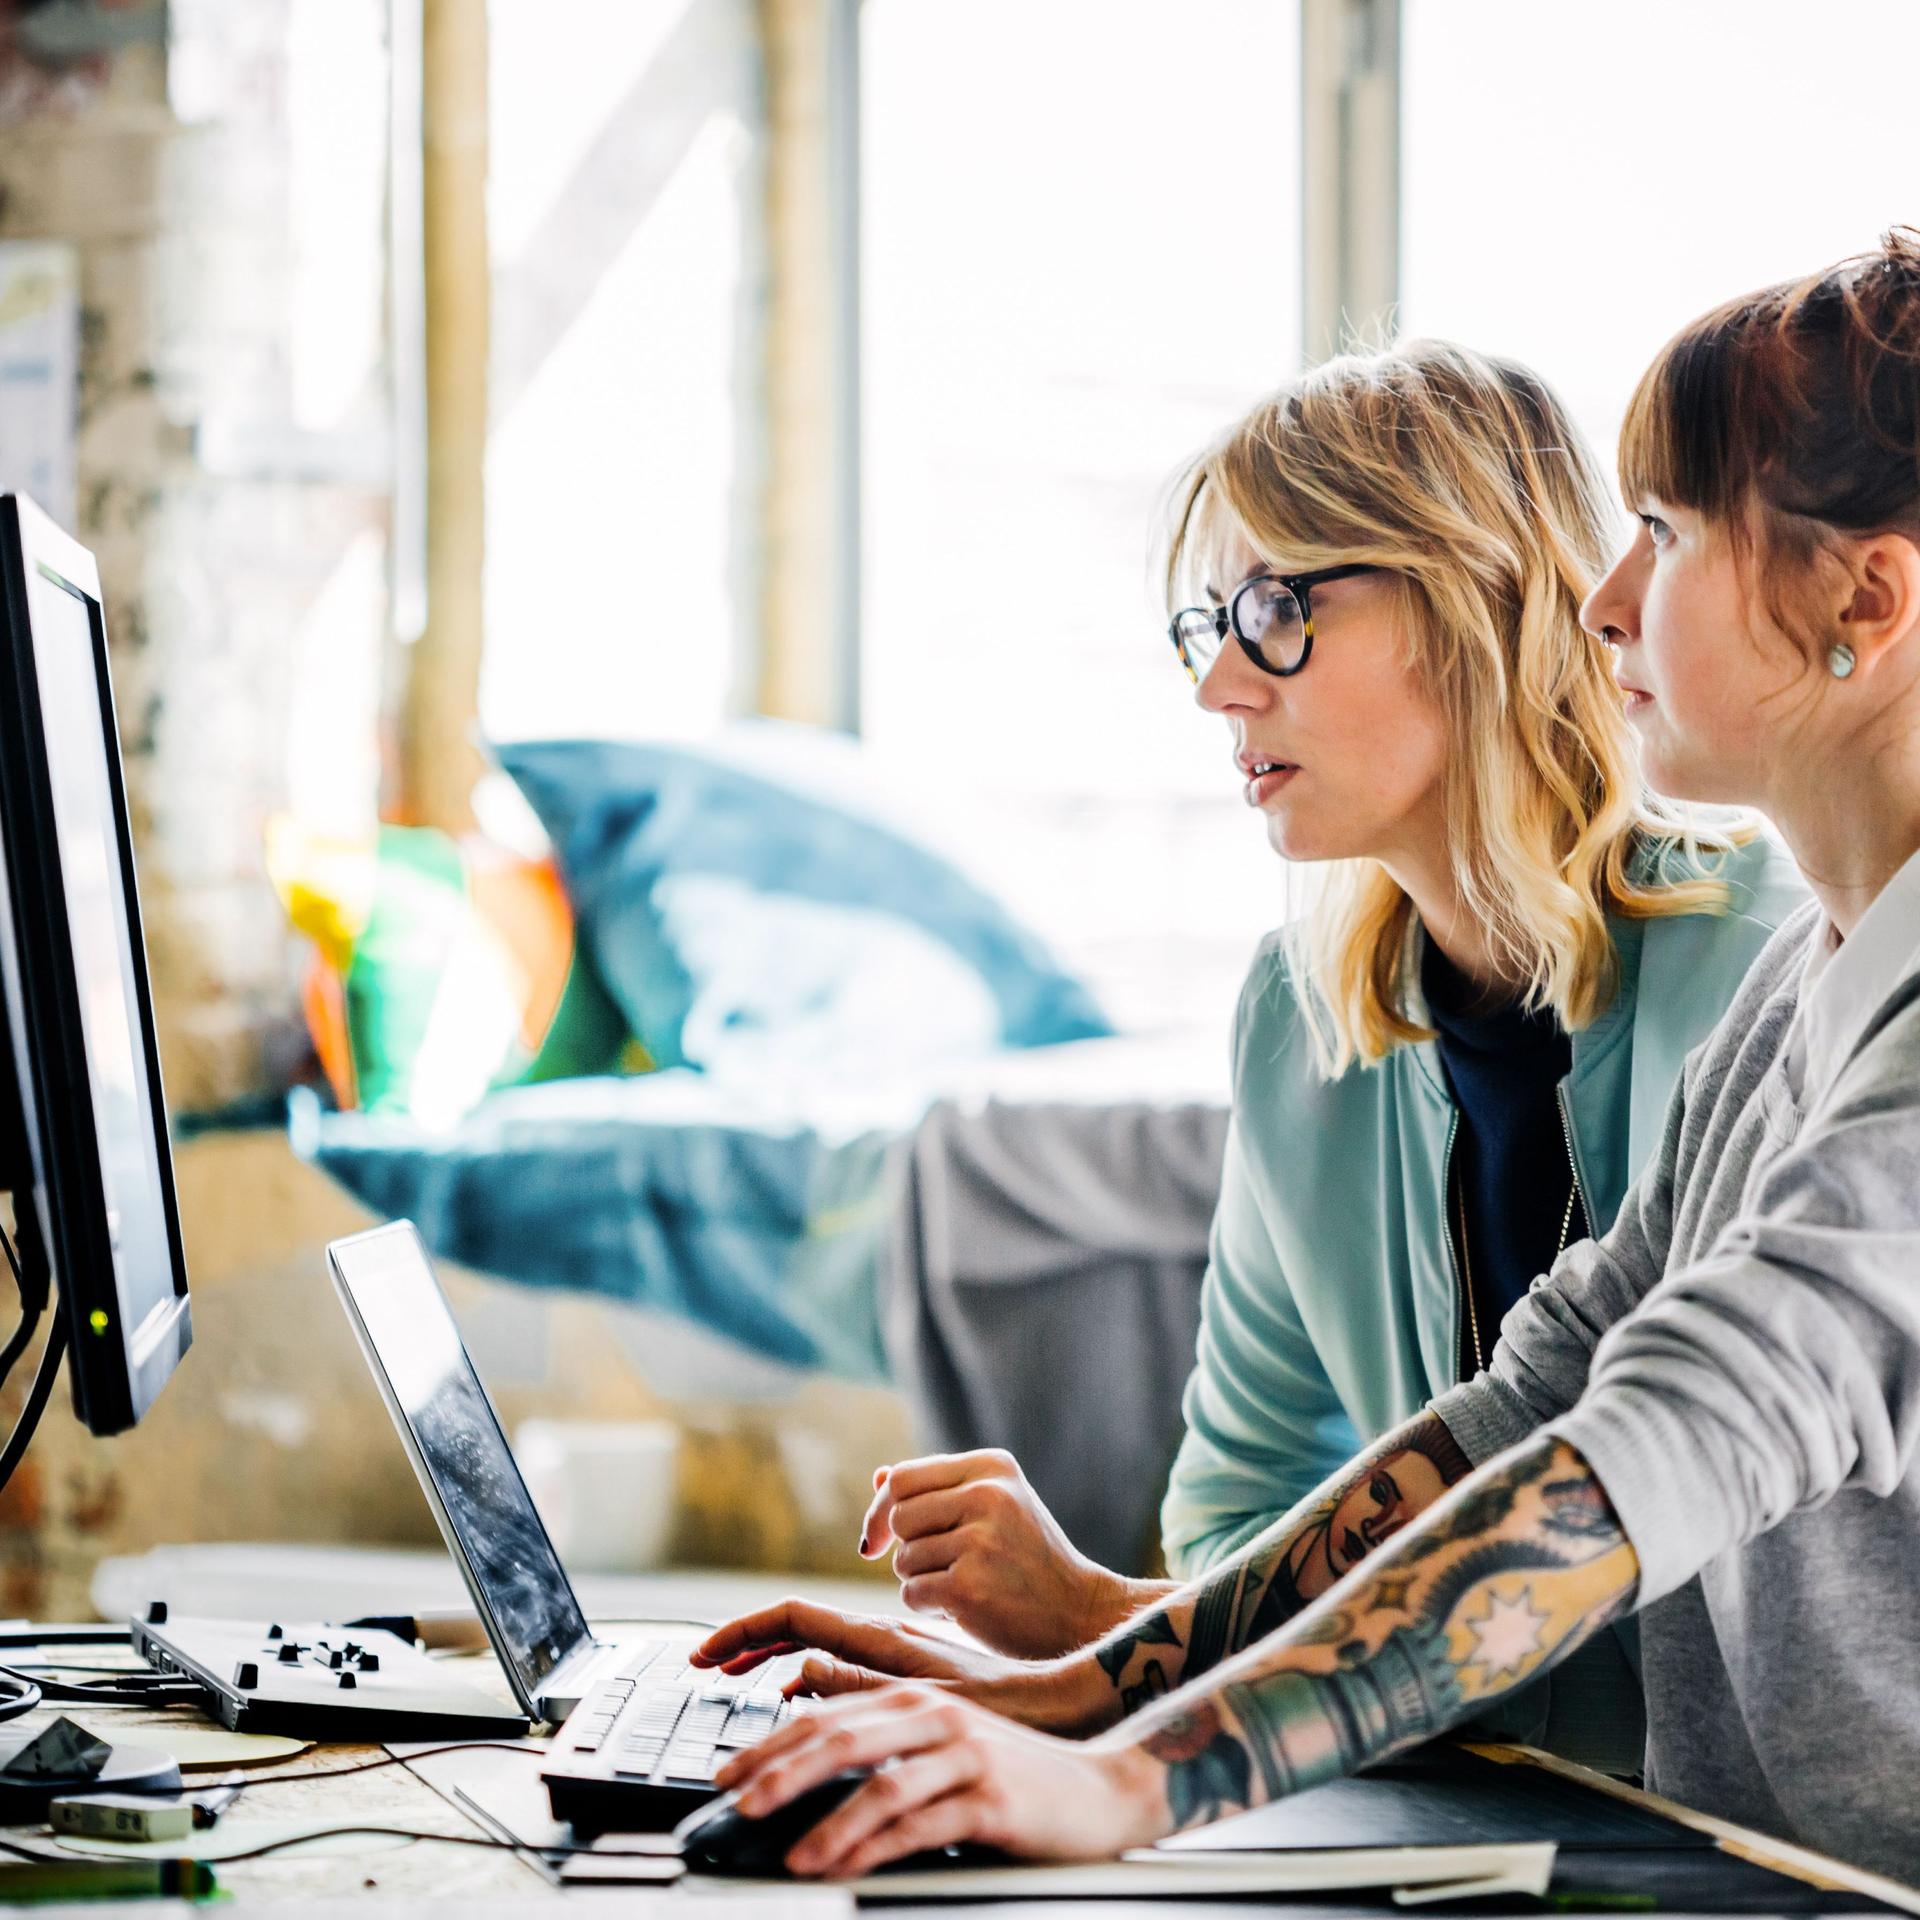 Zwei junge Frauen, die zusammen an einem Computer arbeiten.